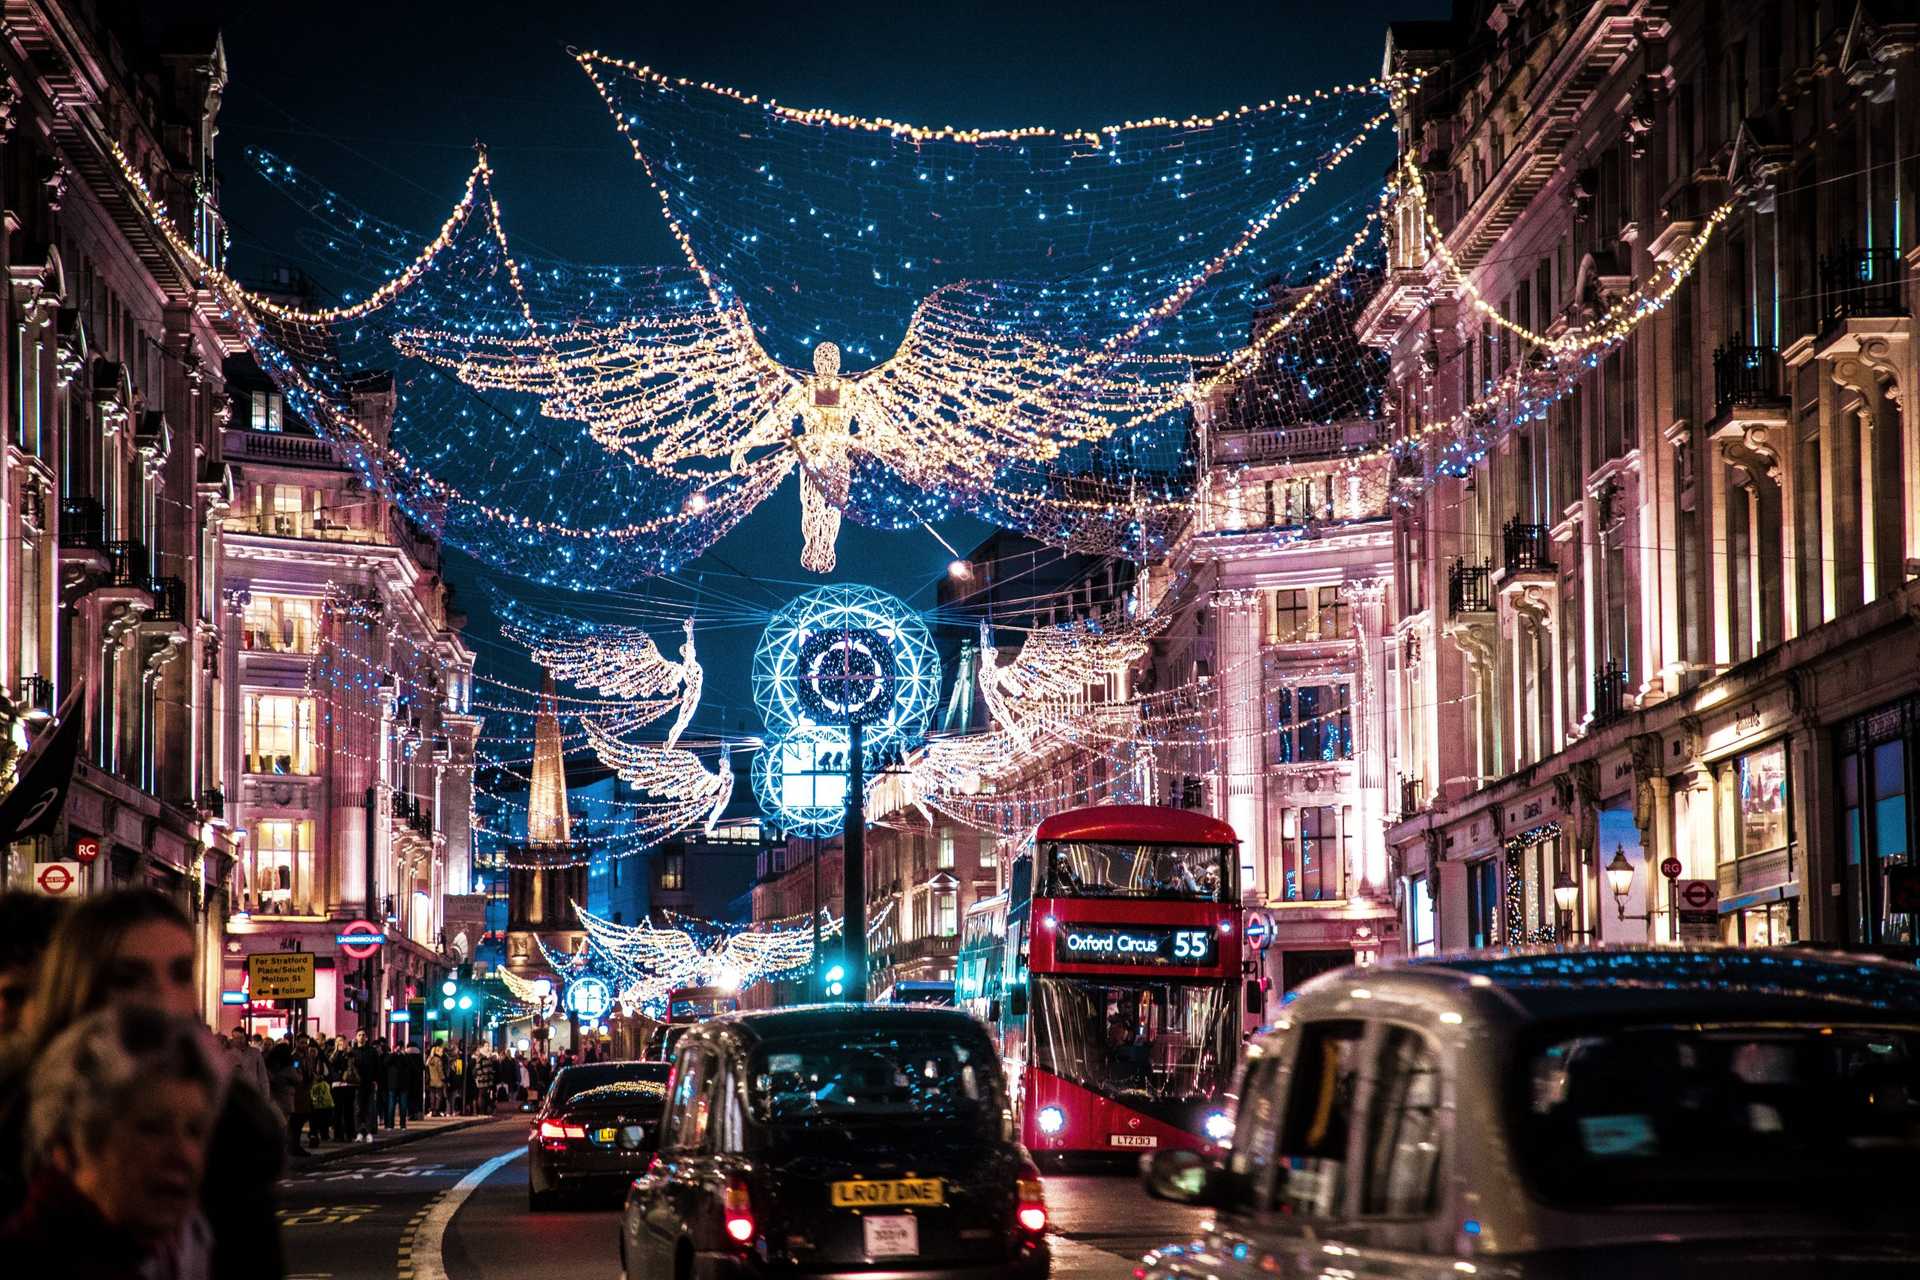  London Christmas lights